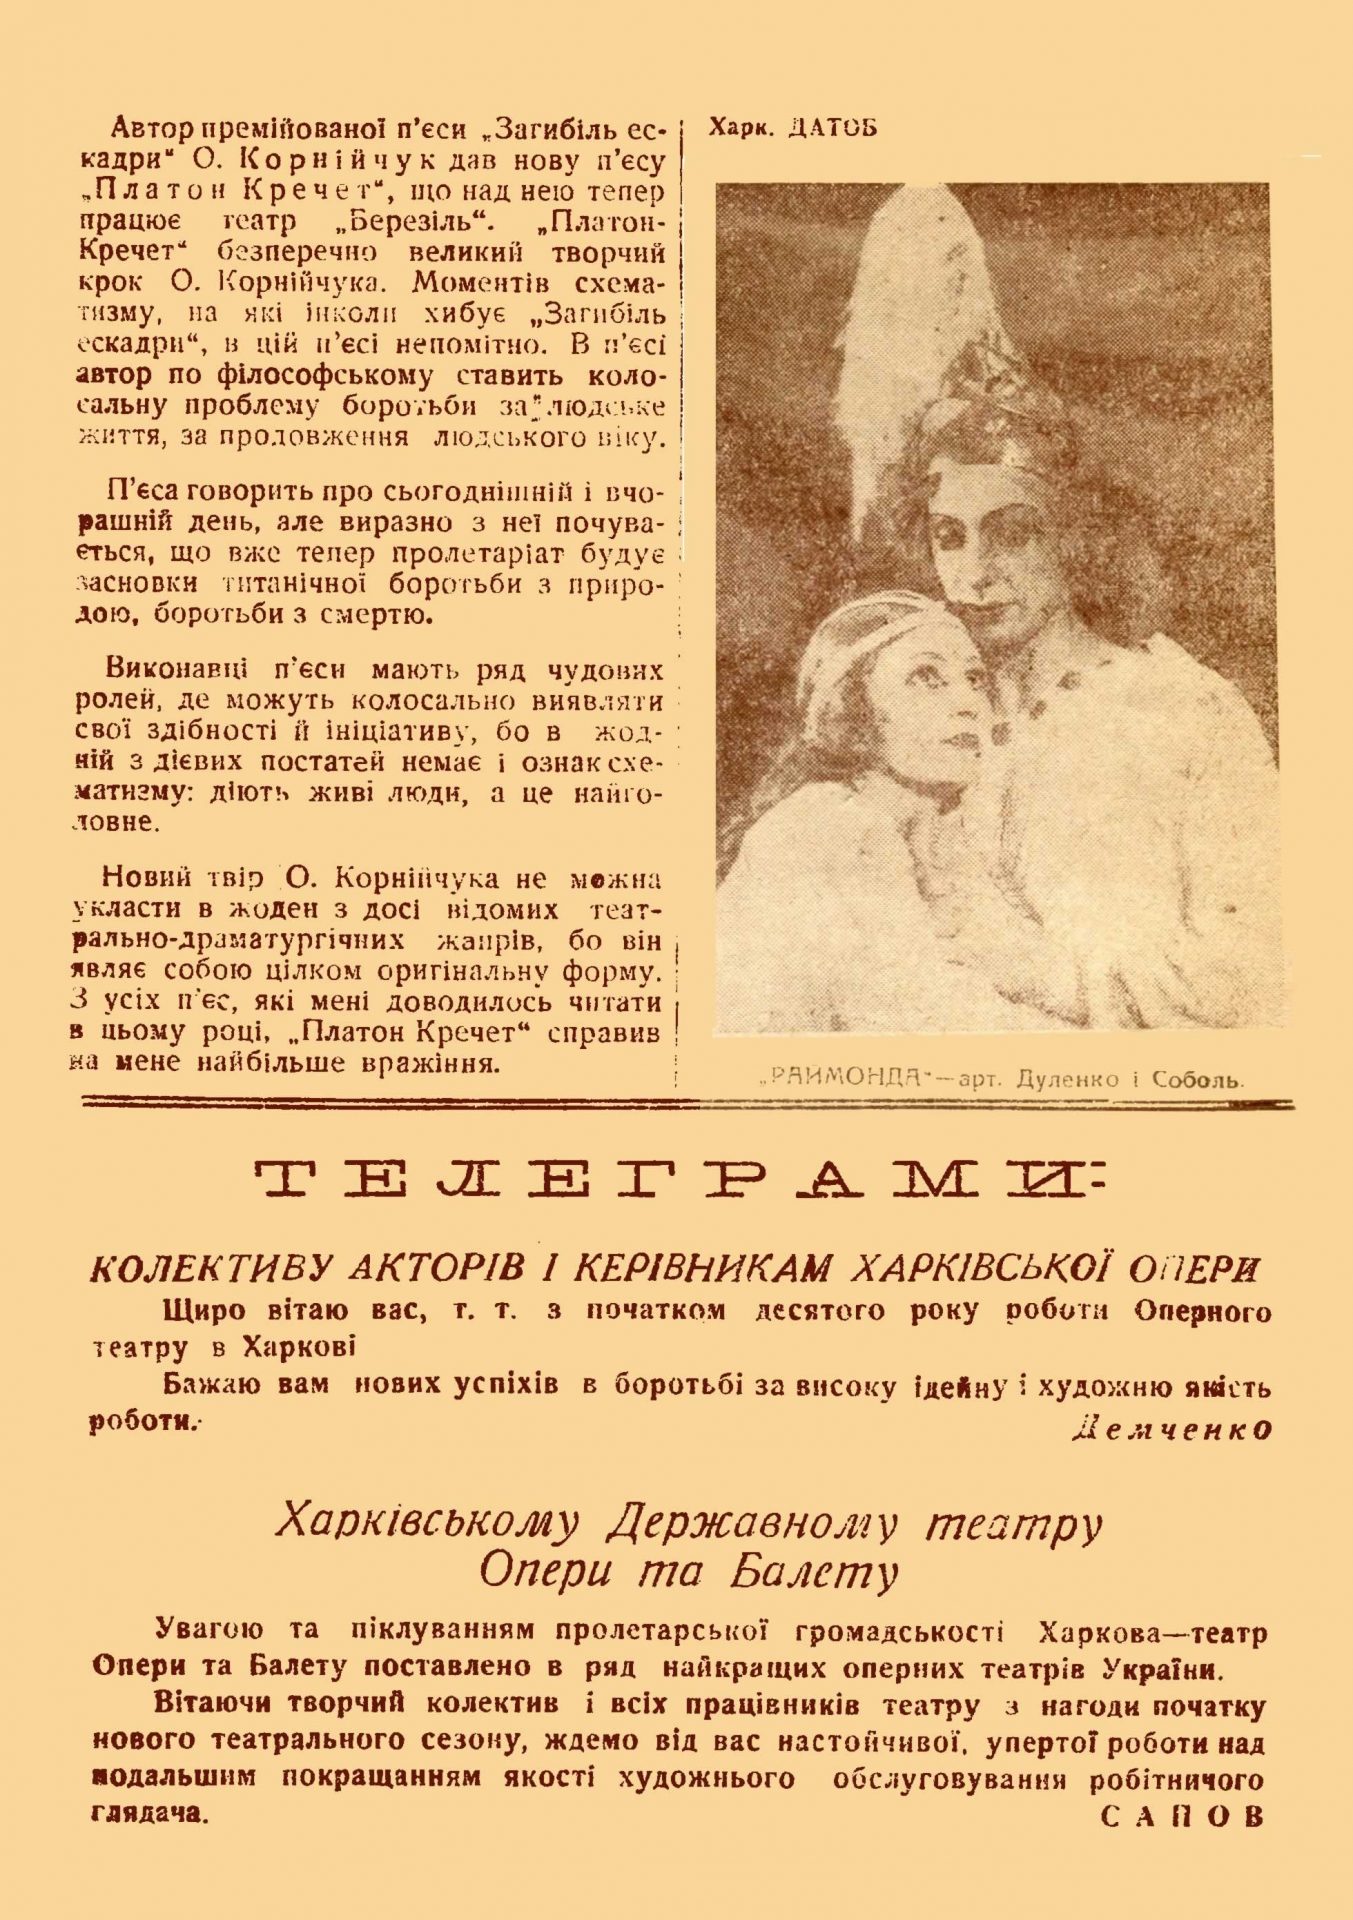 Театральна декада_1934_02